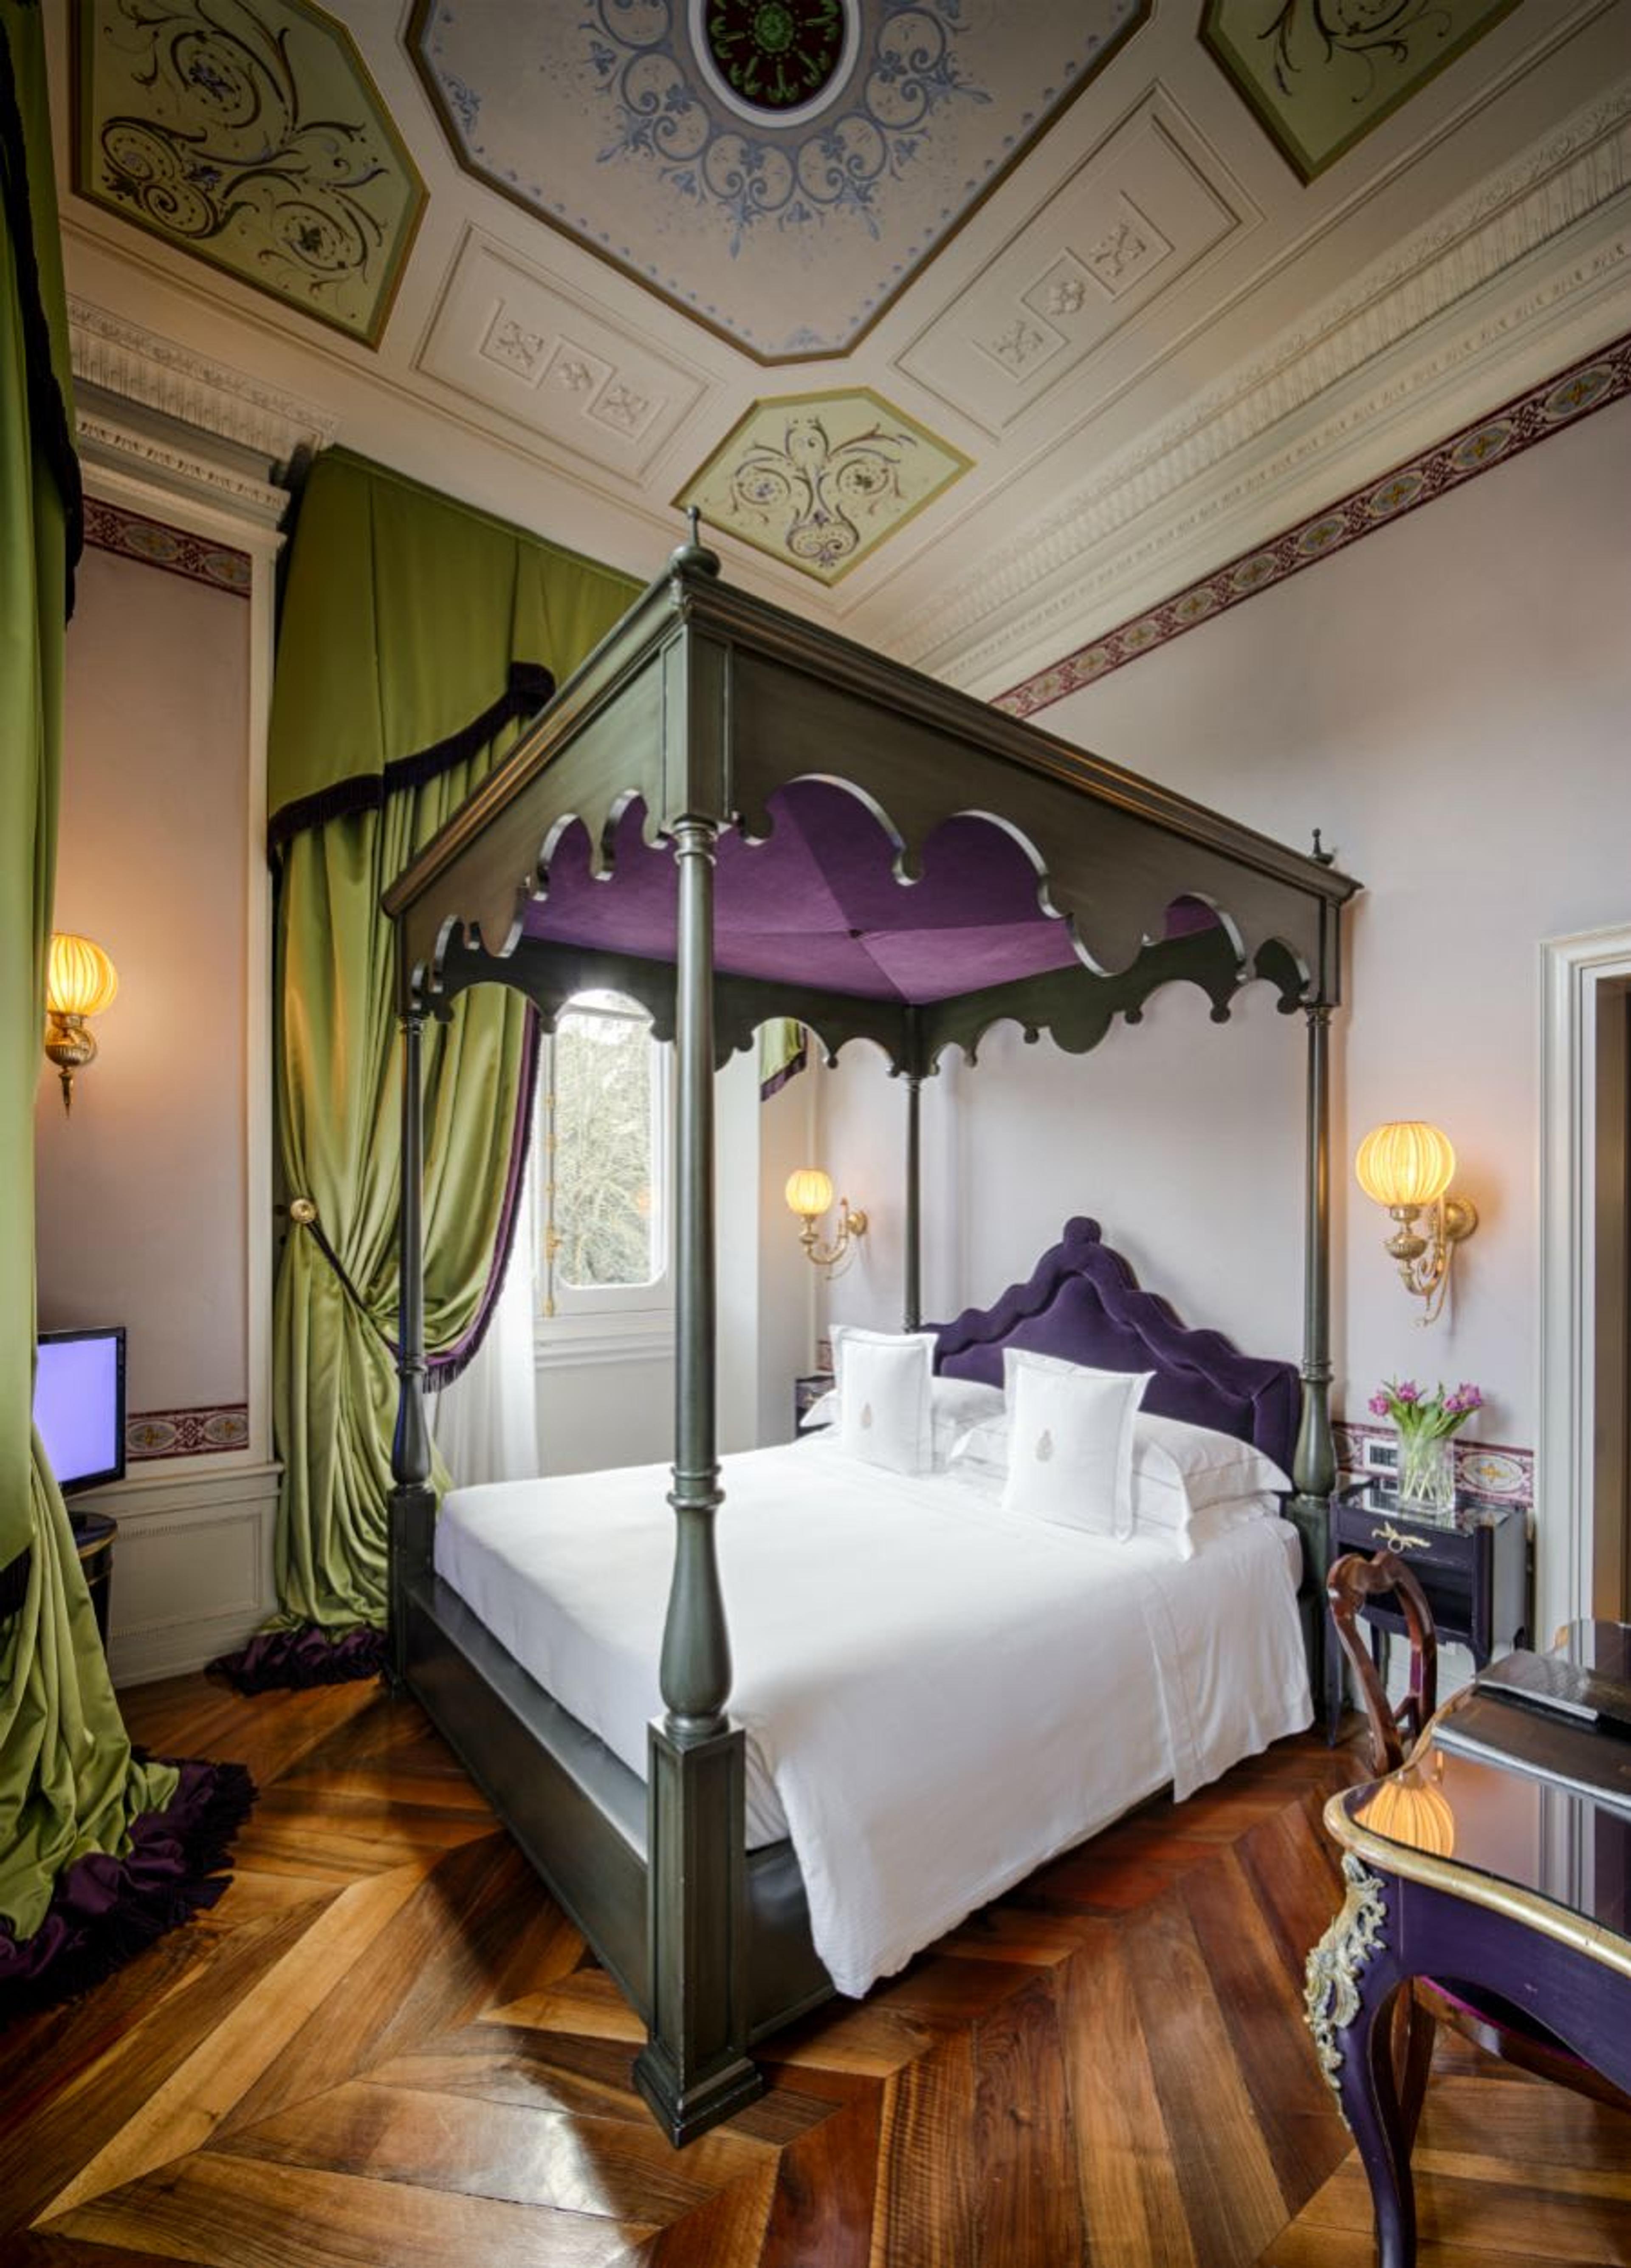 Blick in eine elegante Suite in Grün- und Violetttönen mit einem königlichen Himmelbett und kostbaren Fresken.